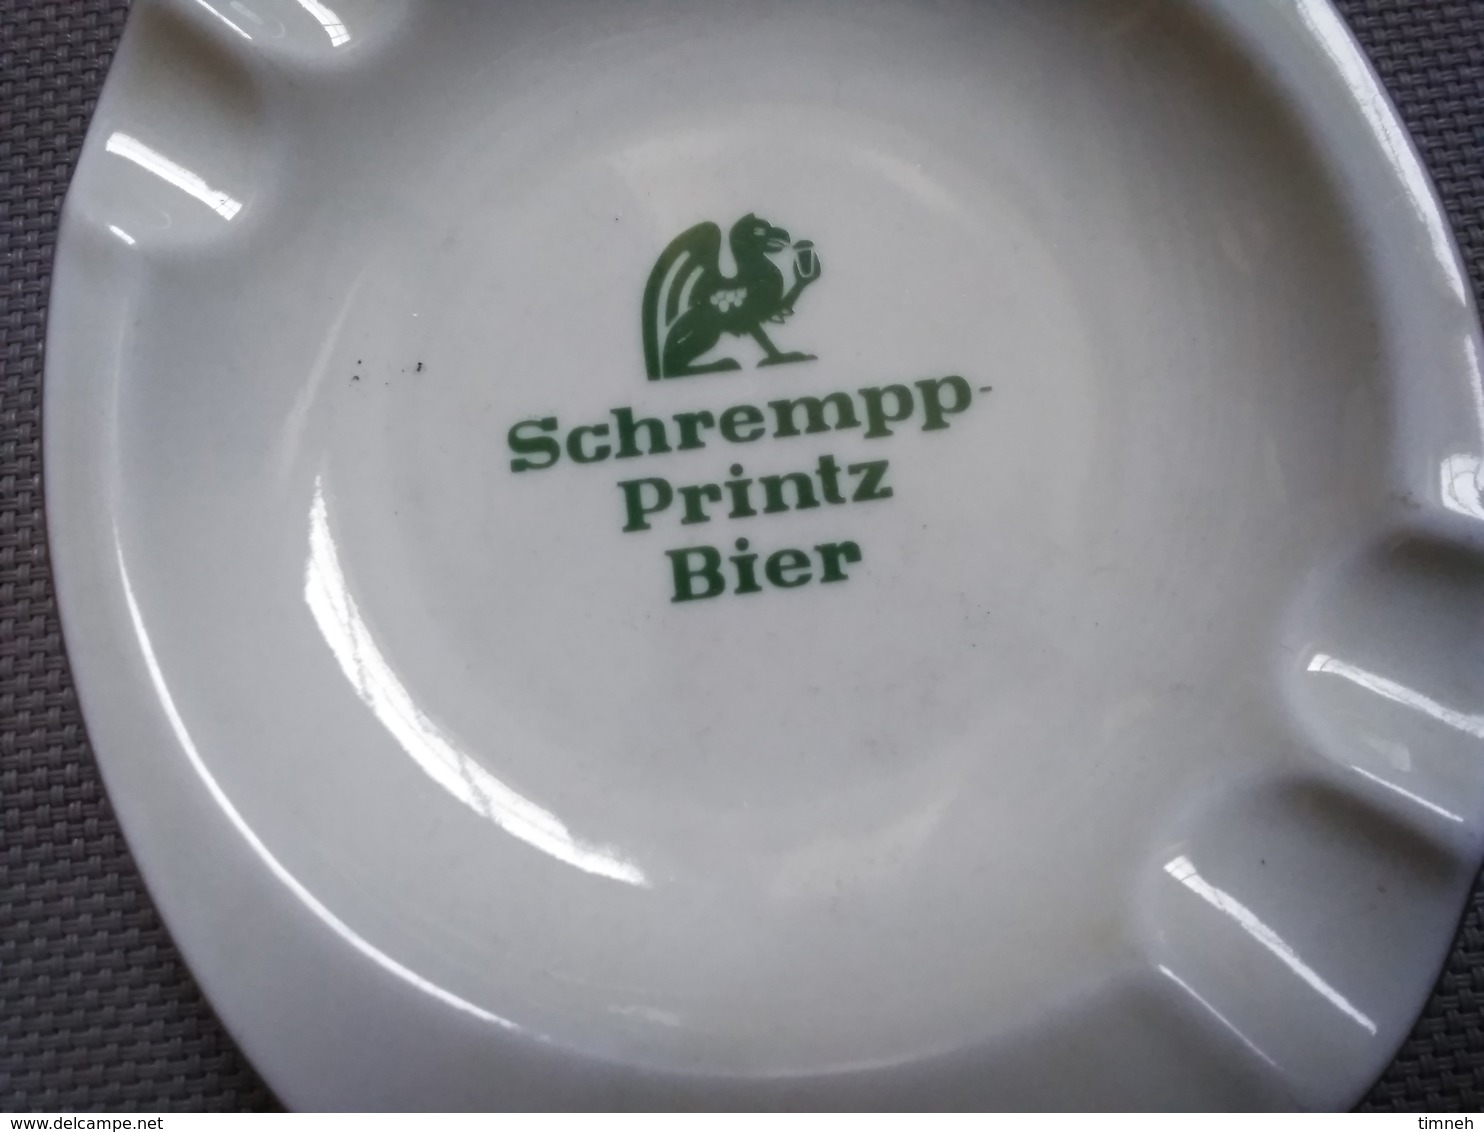 FAÏENCE EMIL SAHM PLANKENHAMMER FLOSS BAVARIA GERMANY - SCHREMPP PRINTZ BIER - CENDRIER 15x12cm - FAÏENCE - Asbakken